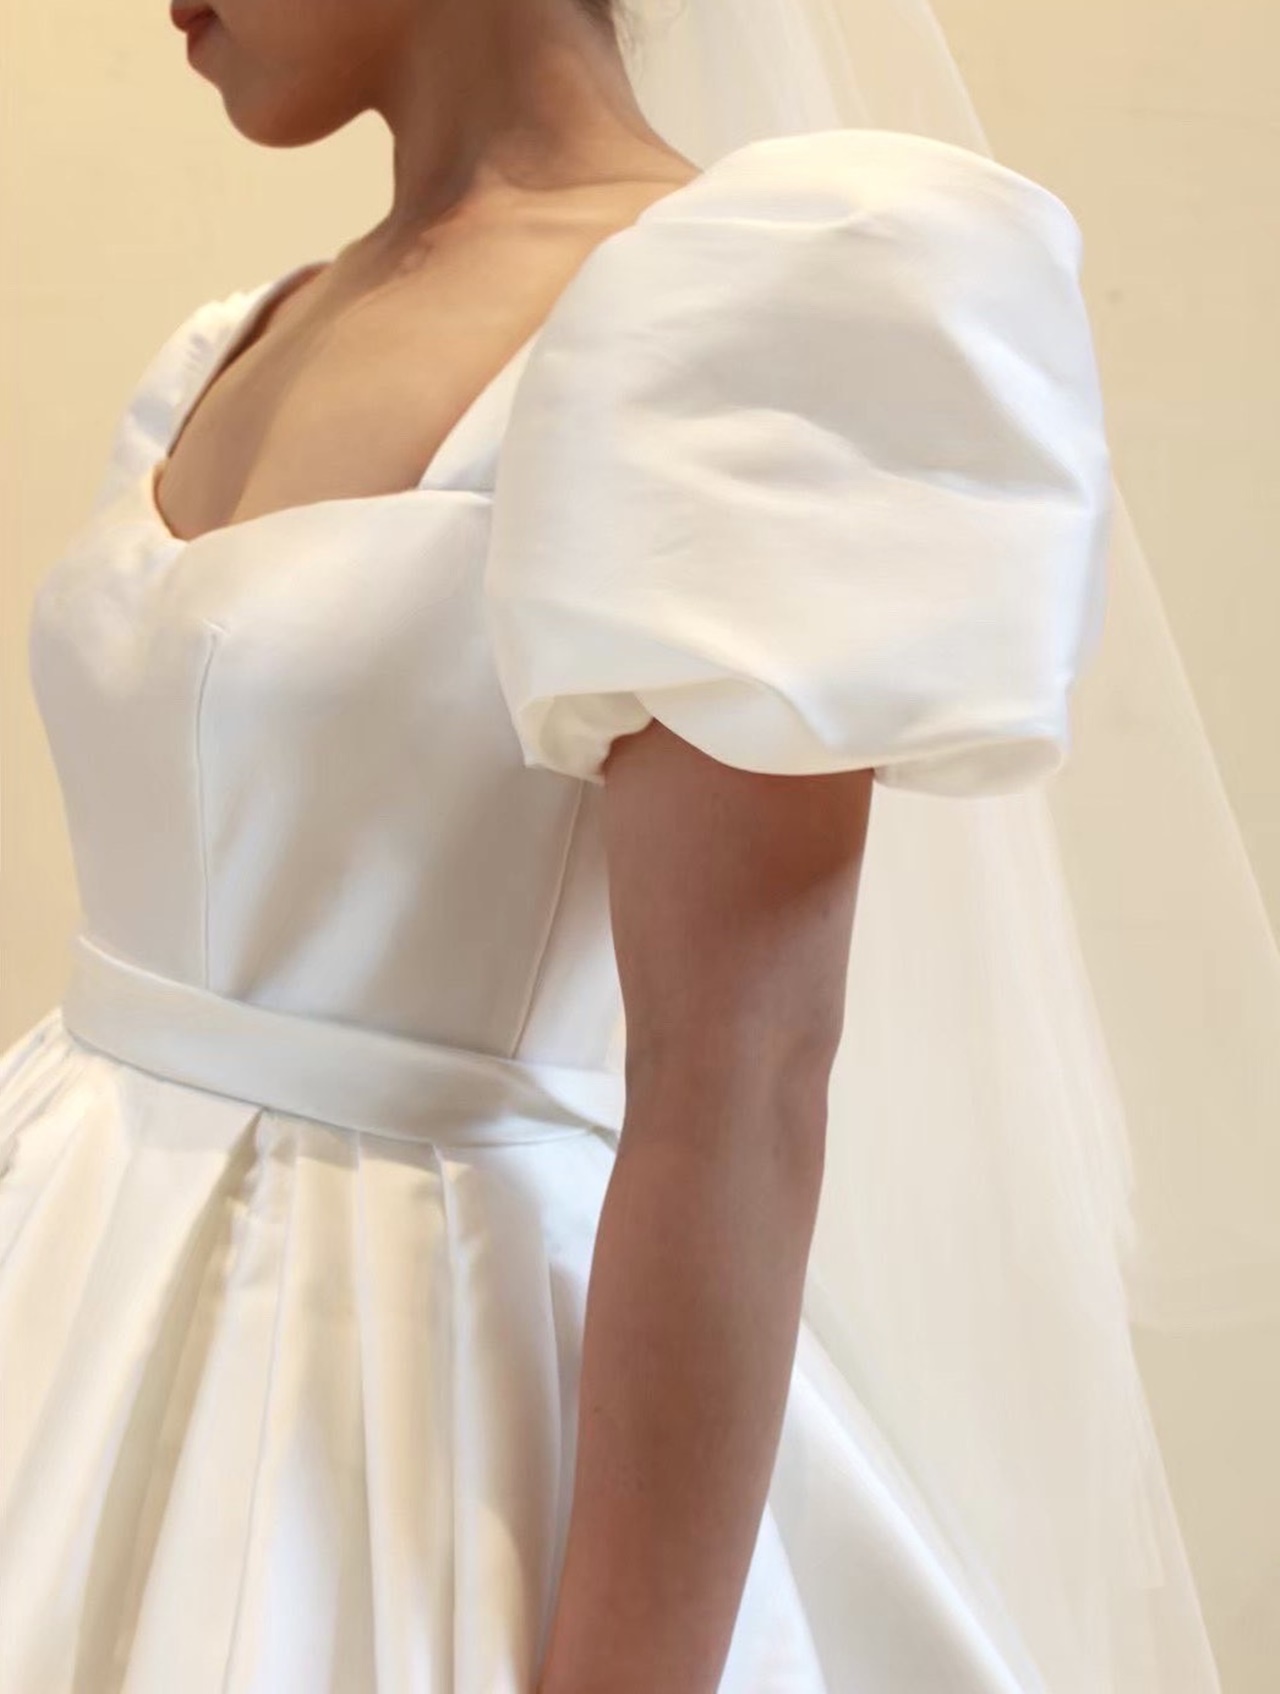 ウィズ ザ スタイル 福岡の専属ドレスショップであるTHE TREAT DRESSING福岡店では、インポートのリーム アクラの新作ウェディングドレスのご試着が可能です